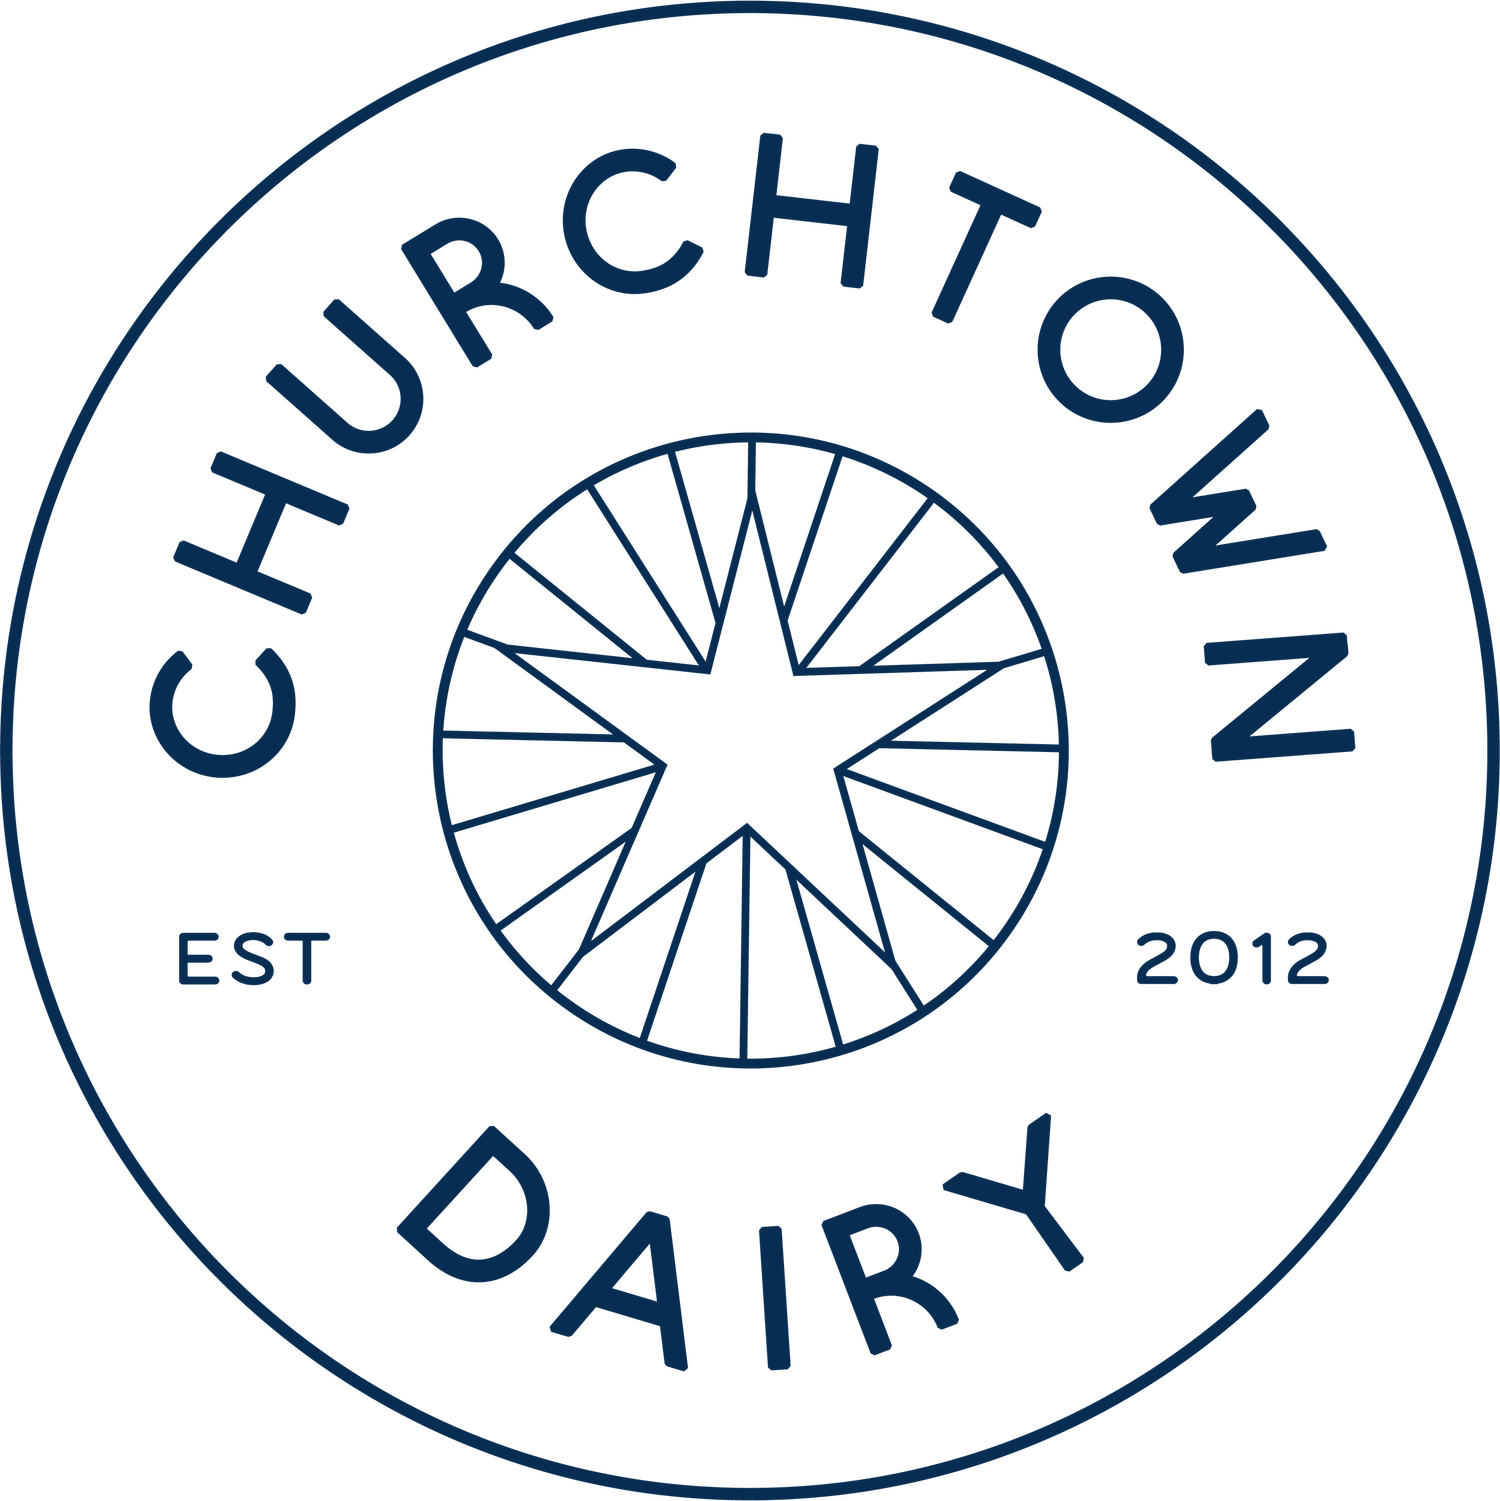 www.churchtowndairy.org